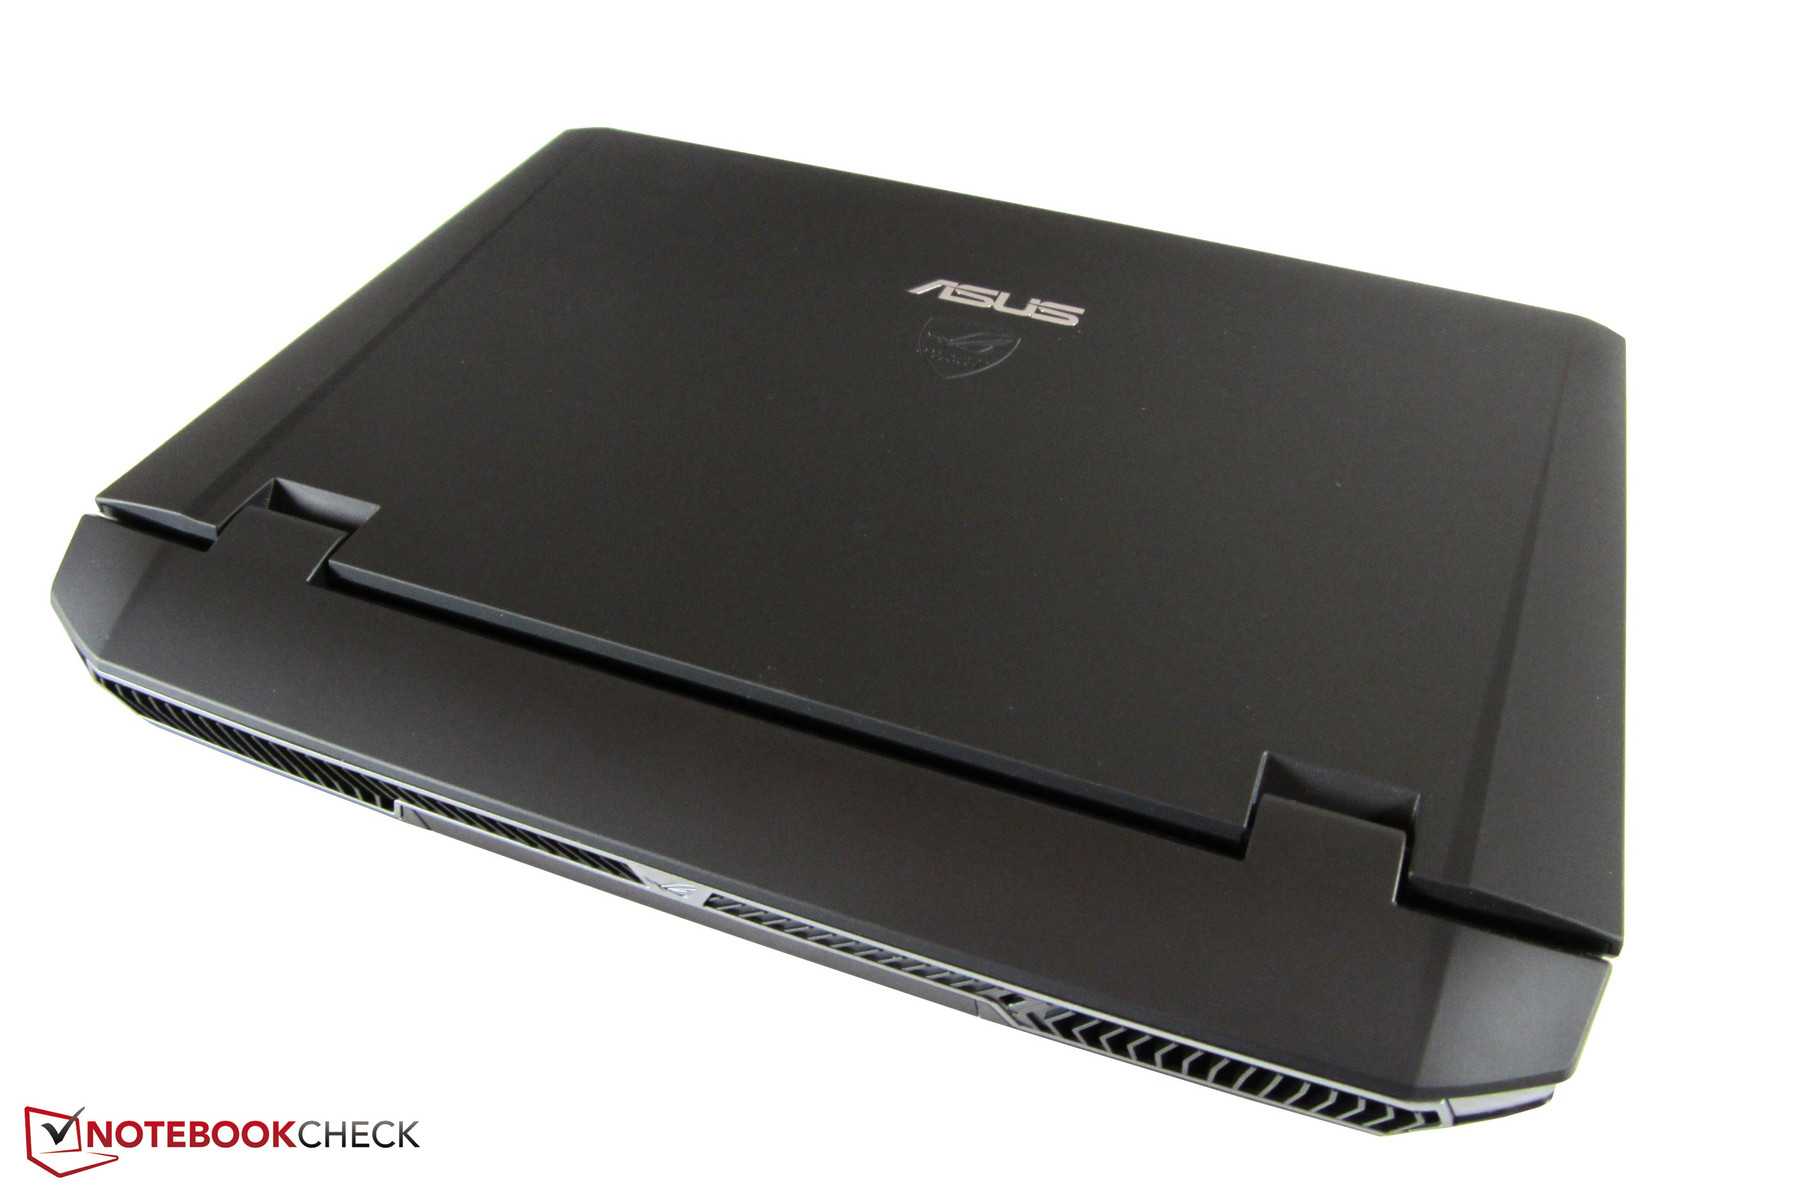 Ноутбук Asus G75VX (G75VX-T4027H) - подробные характеристики обзоры видео фото Цены в интернет-магазинах где можно купить ноутбук Asus G75VX (G75VX-T4027H)